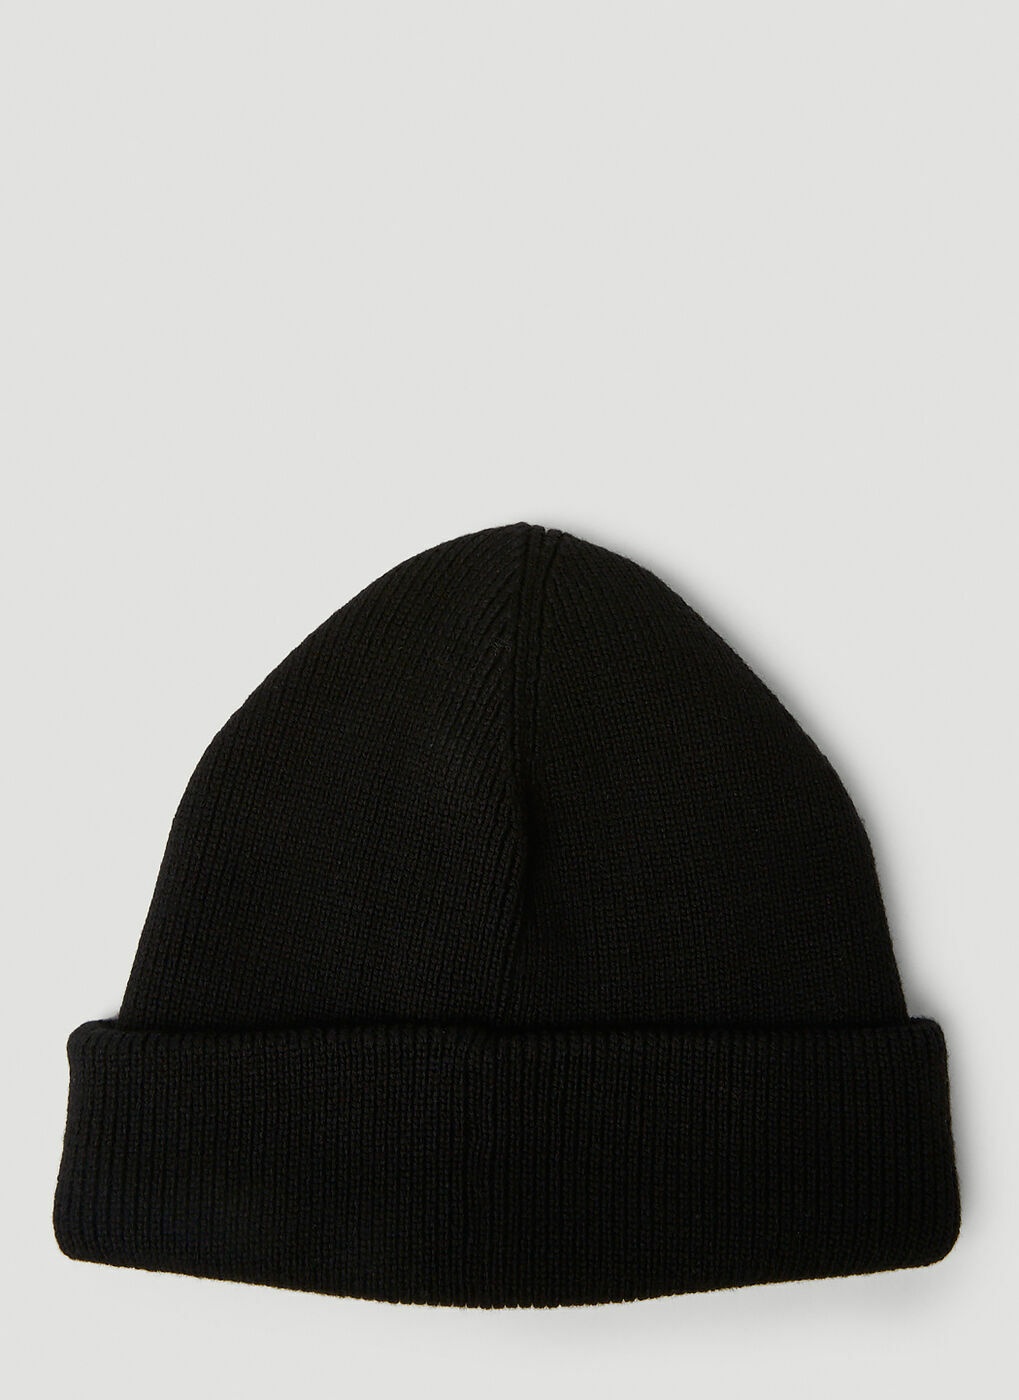 Selfie Beanie Hat in Black